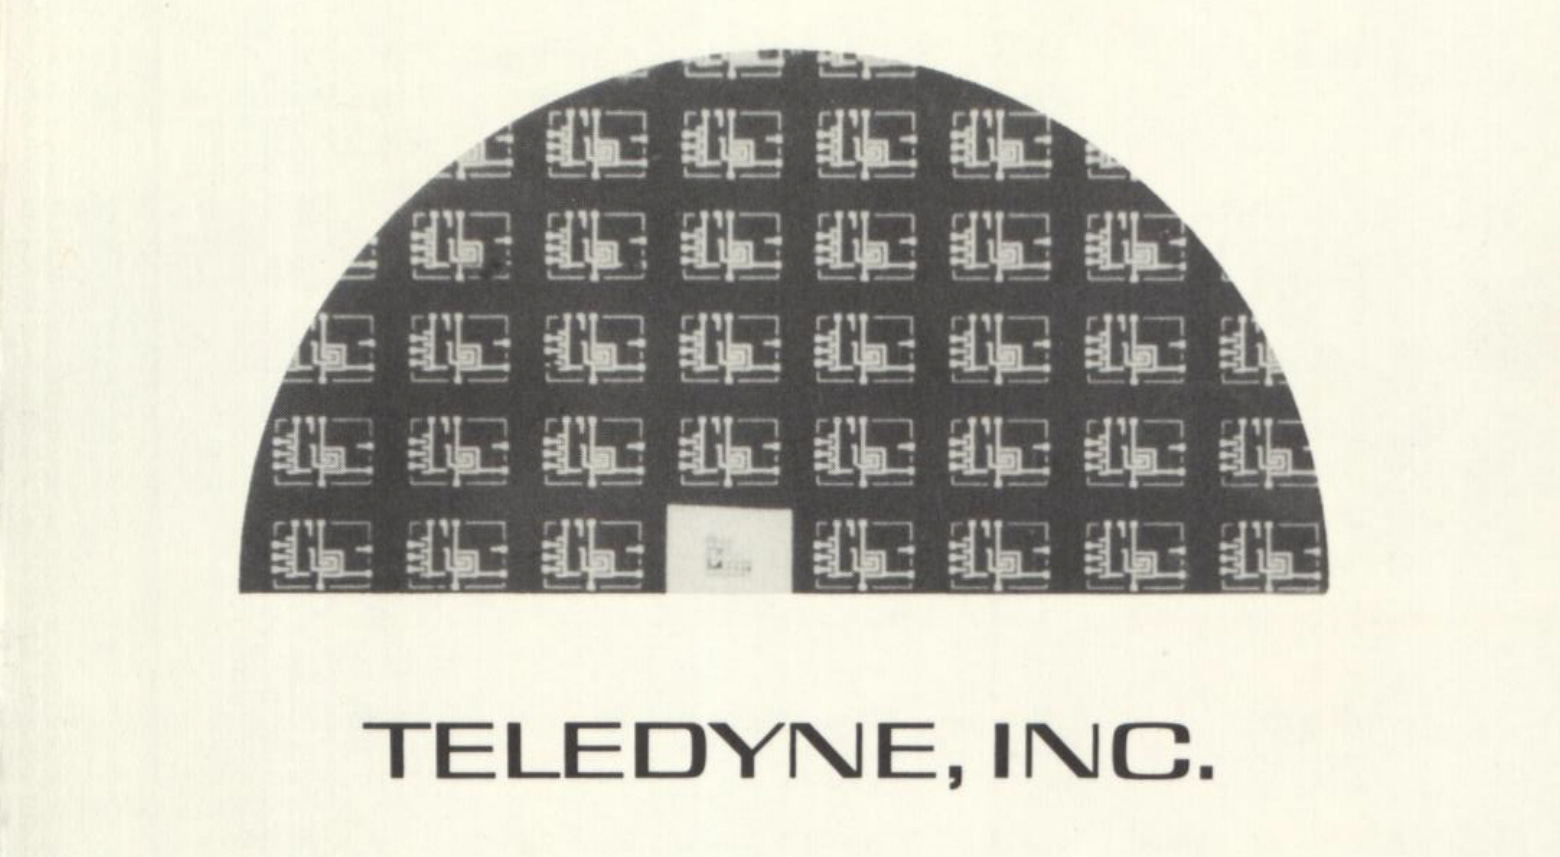 Teledyne Shareholder Letters by Henry Singleton